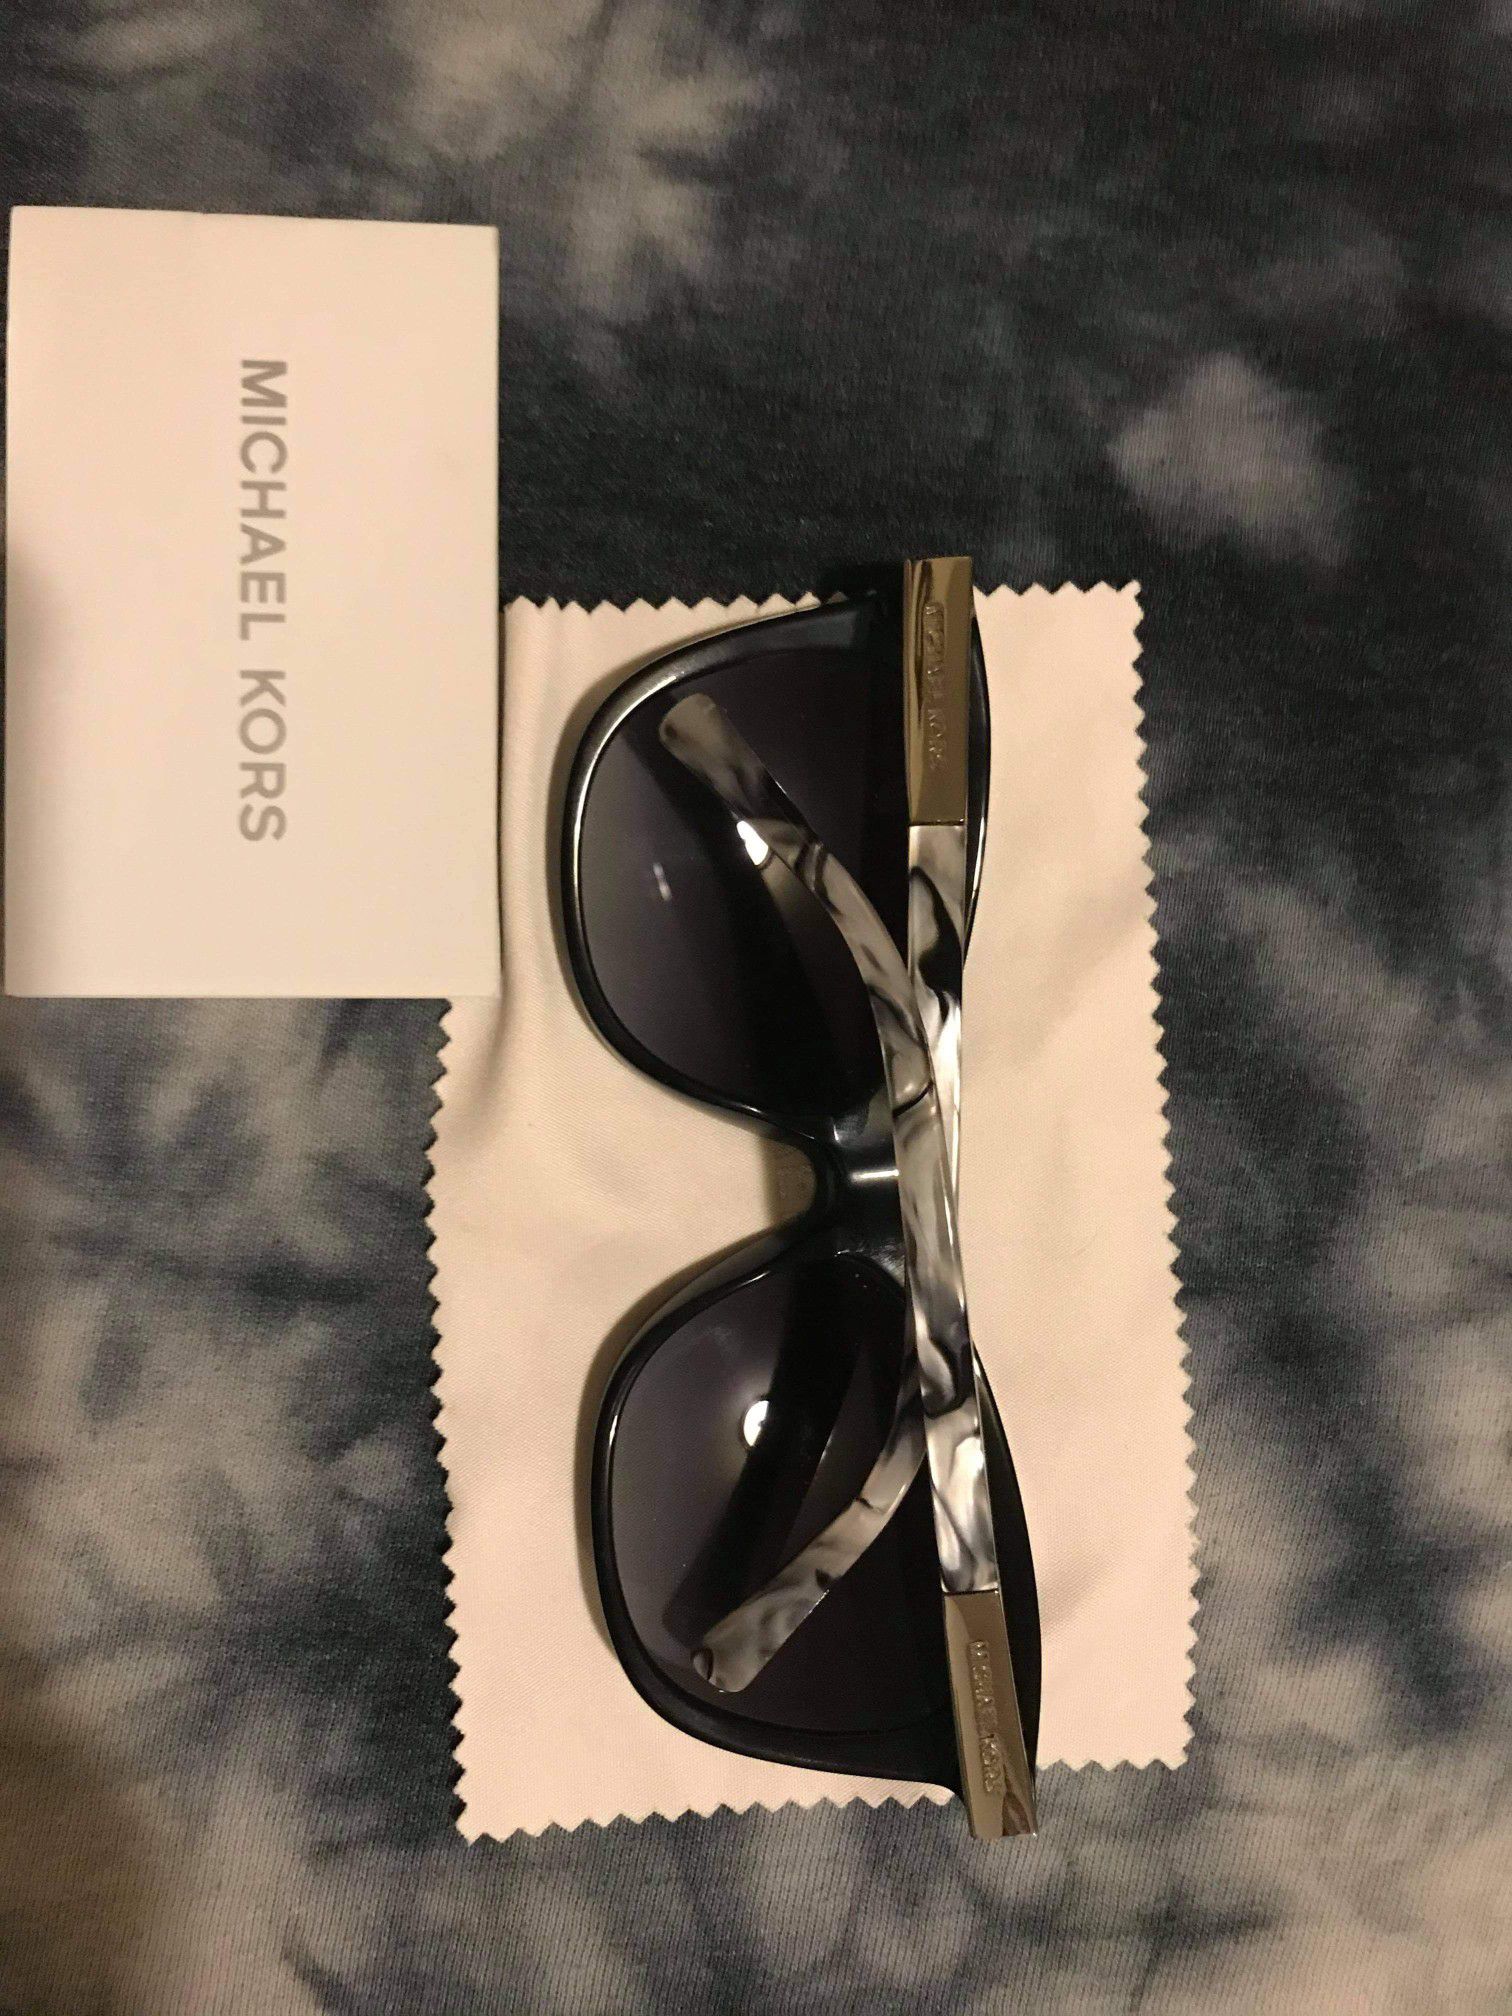 Michael Kors sunglasses 😎